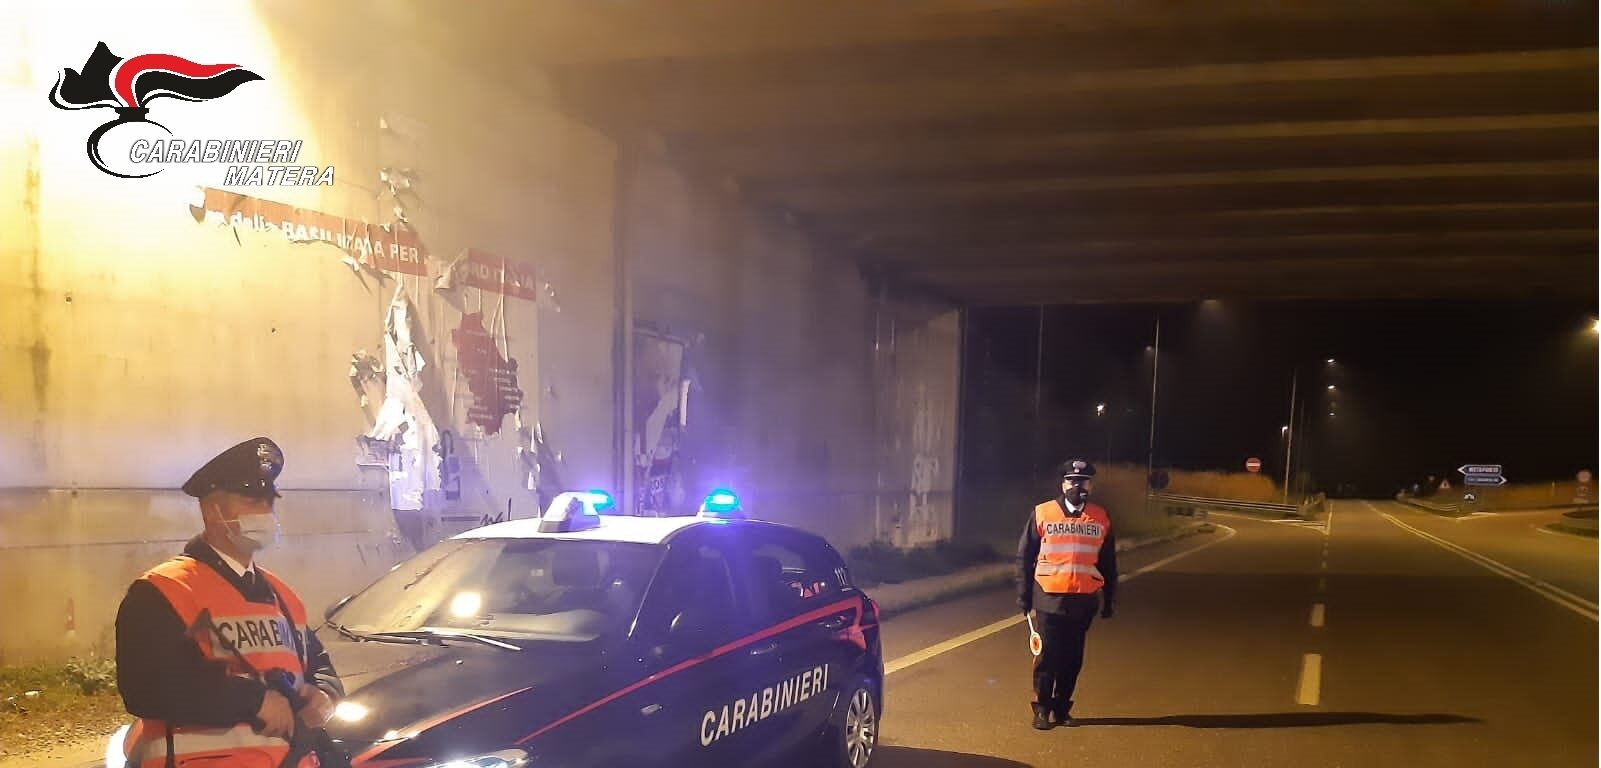 Positivo all’alcoltest dopo un incidente, 23enne denunciato dai Carabinieri di Pisticci